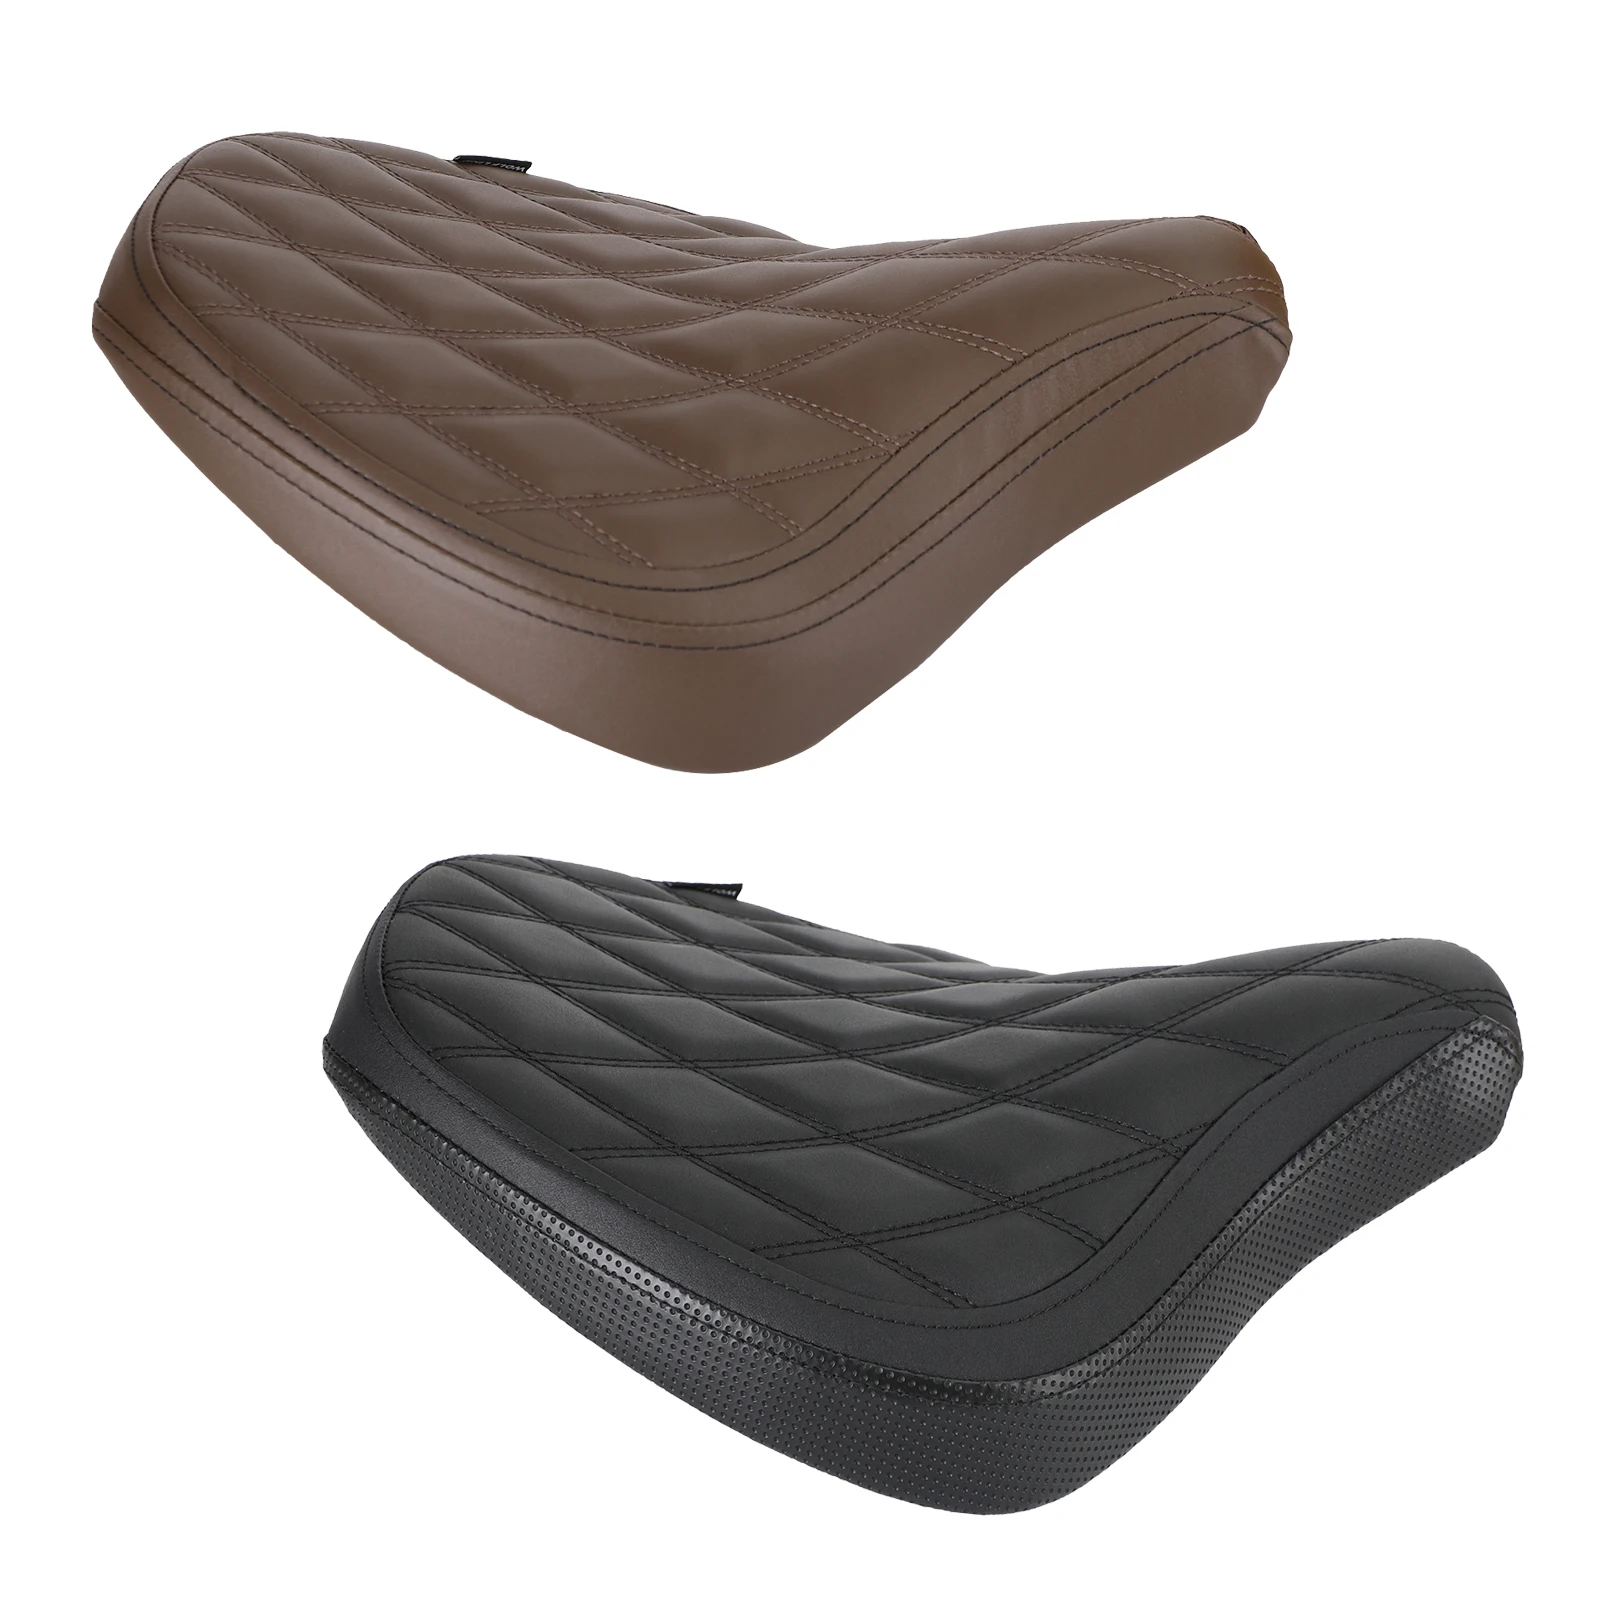 

Artudatech, переднее сиденье для водителя, подушка, бриллиантовая подушка для Tr Bobber 17-22 2020 2021, коричневый